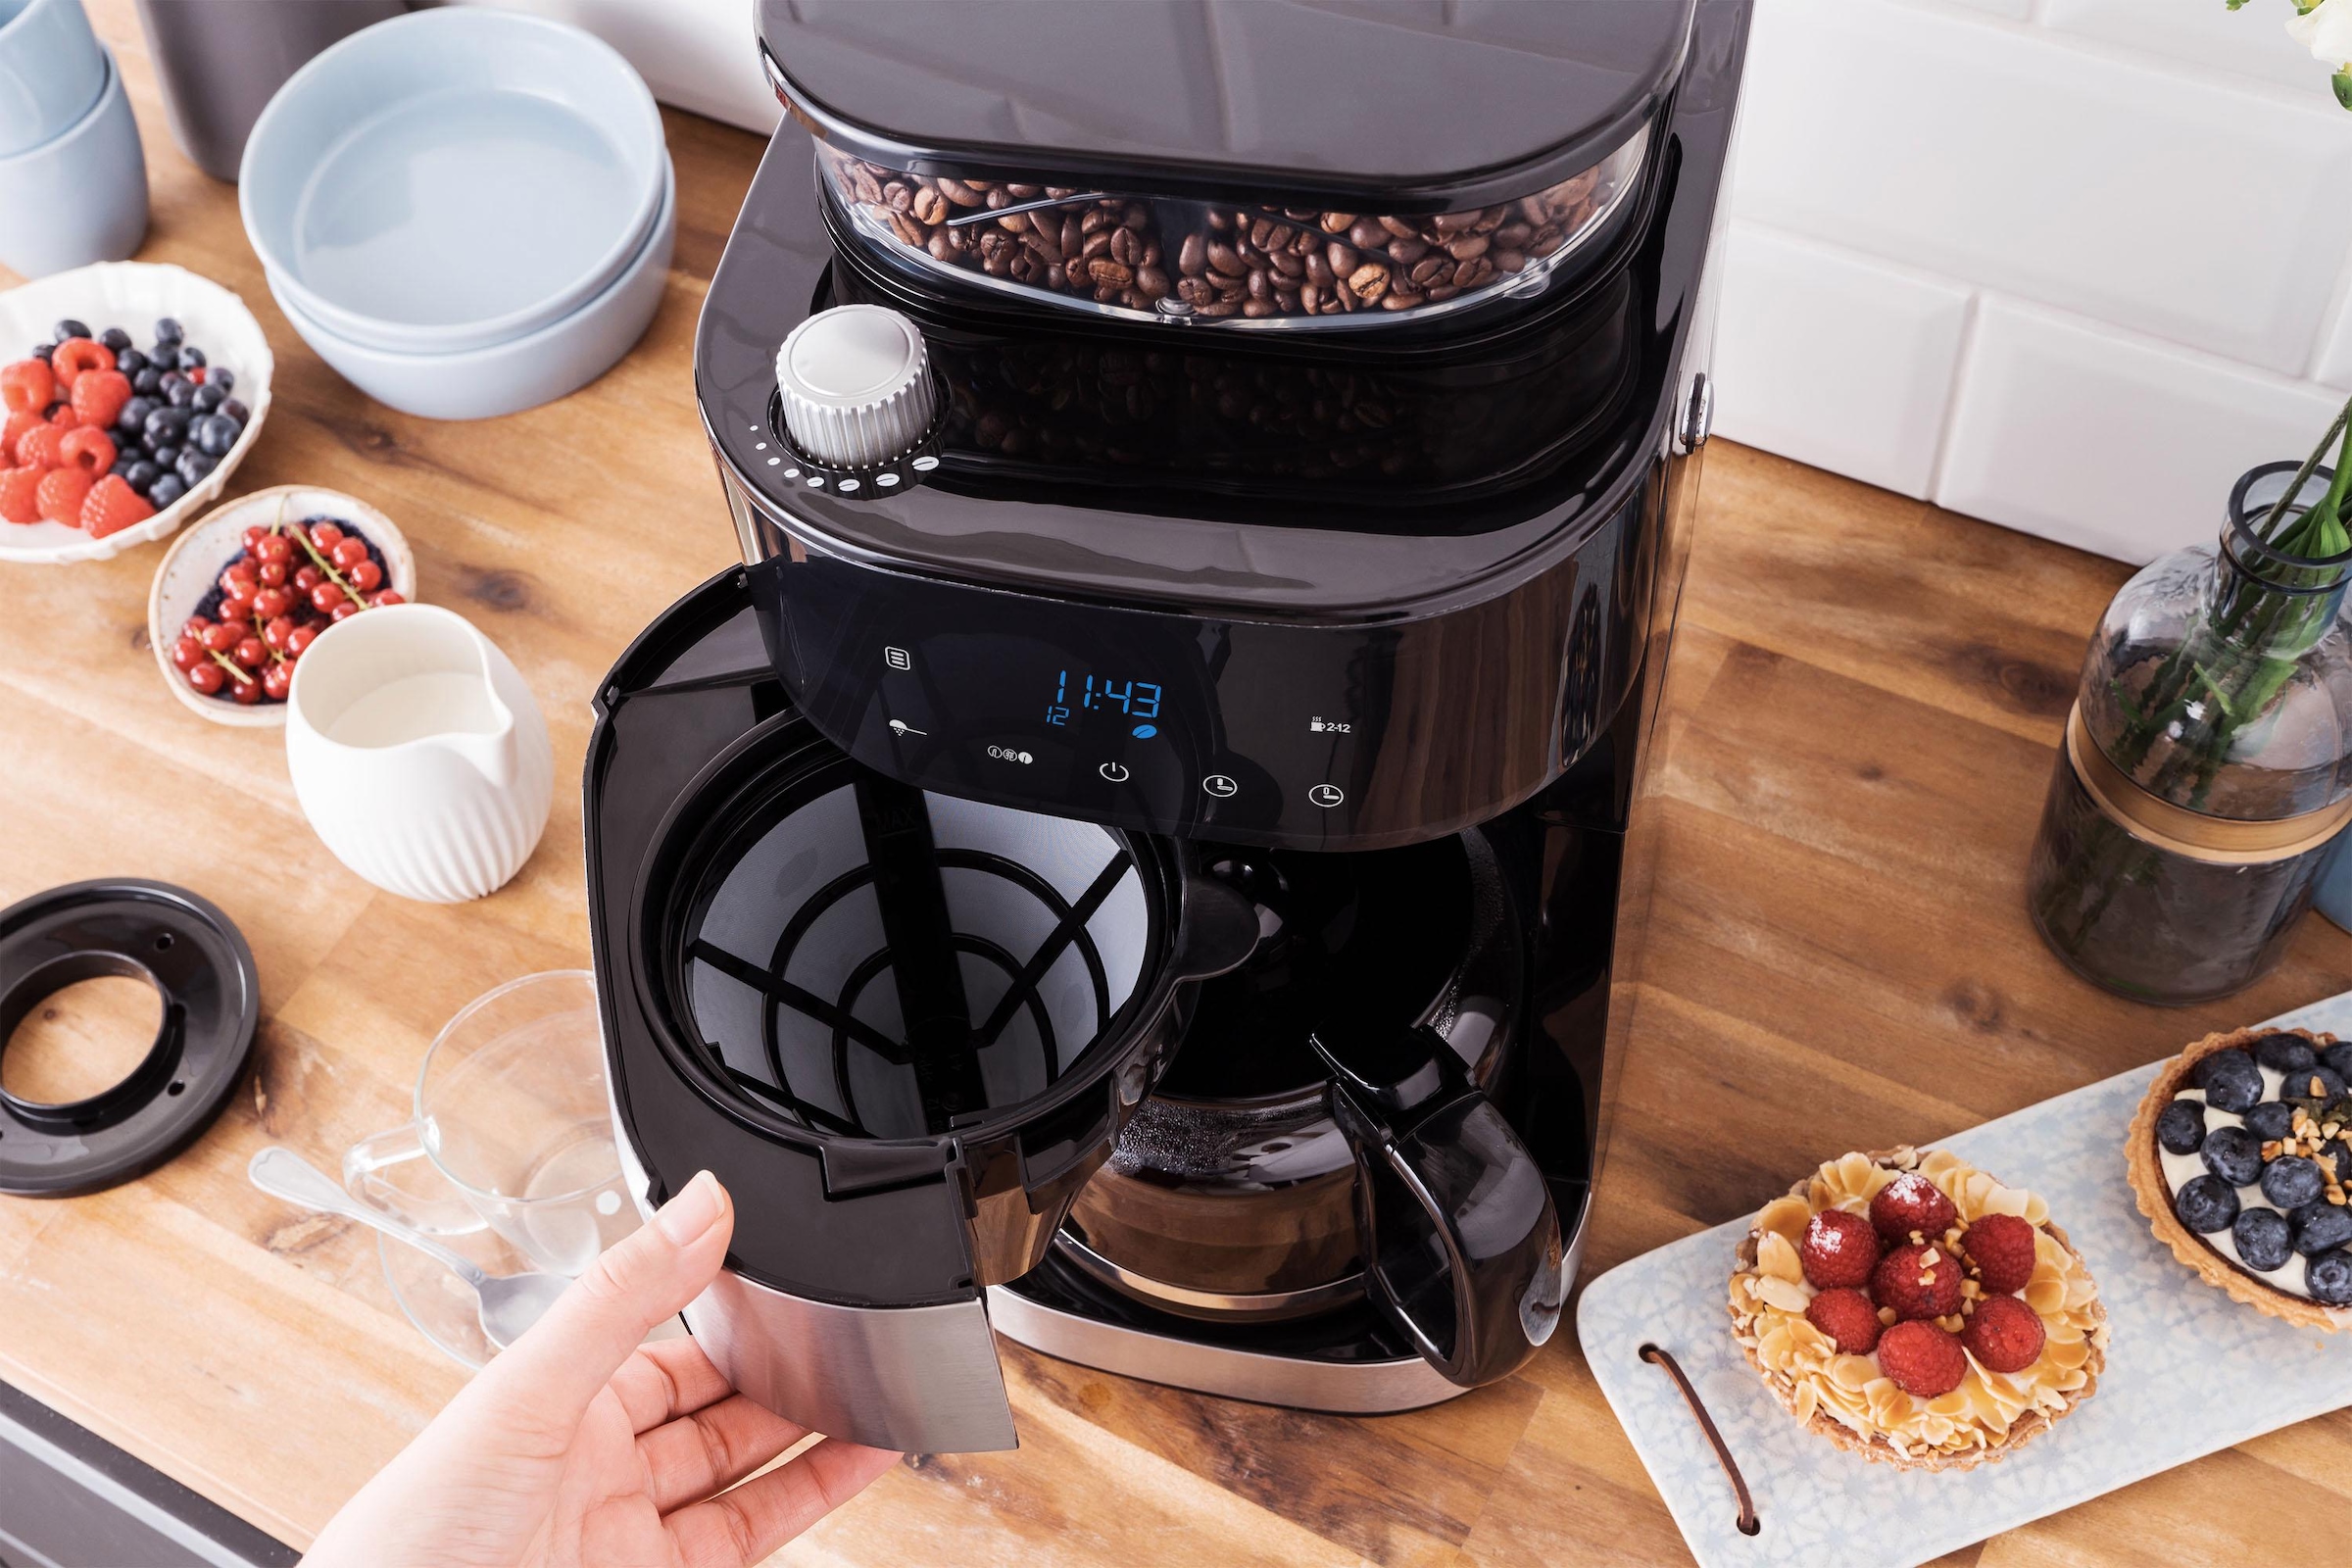 Gastroback Kaffeemaschine mit Mahlwerk »Grind & Brew Pro 42711«, 1,5 l Kaffeekanne, Permanentfilter